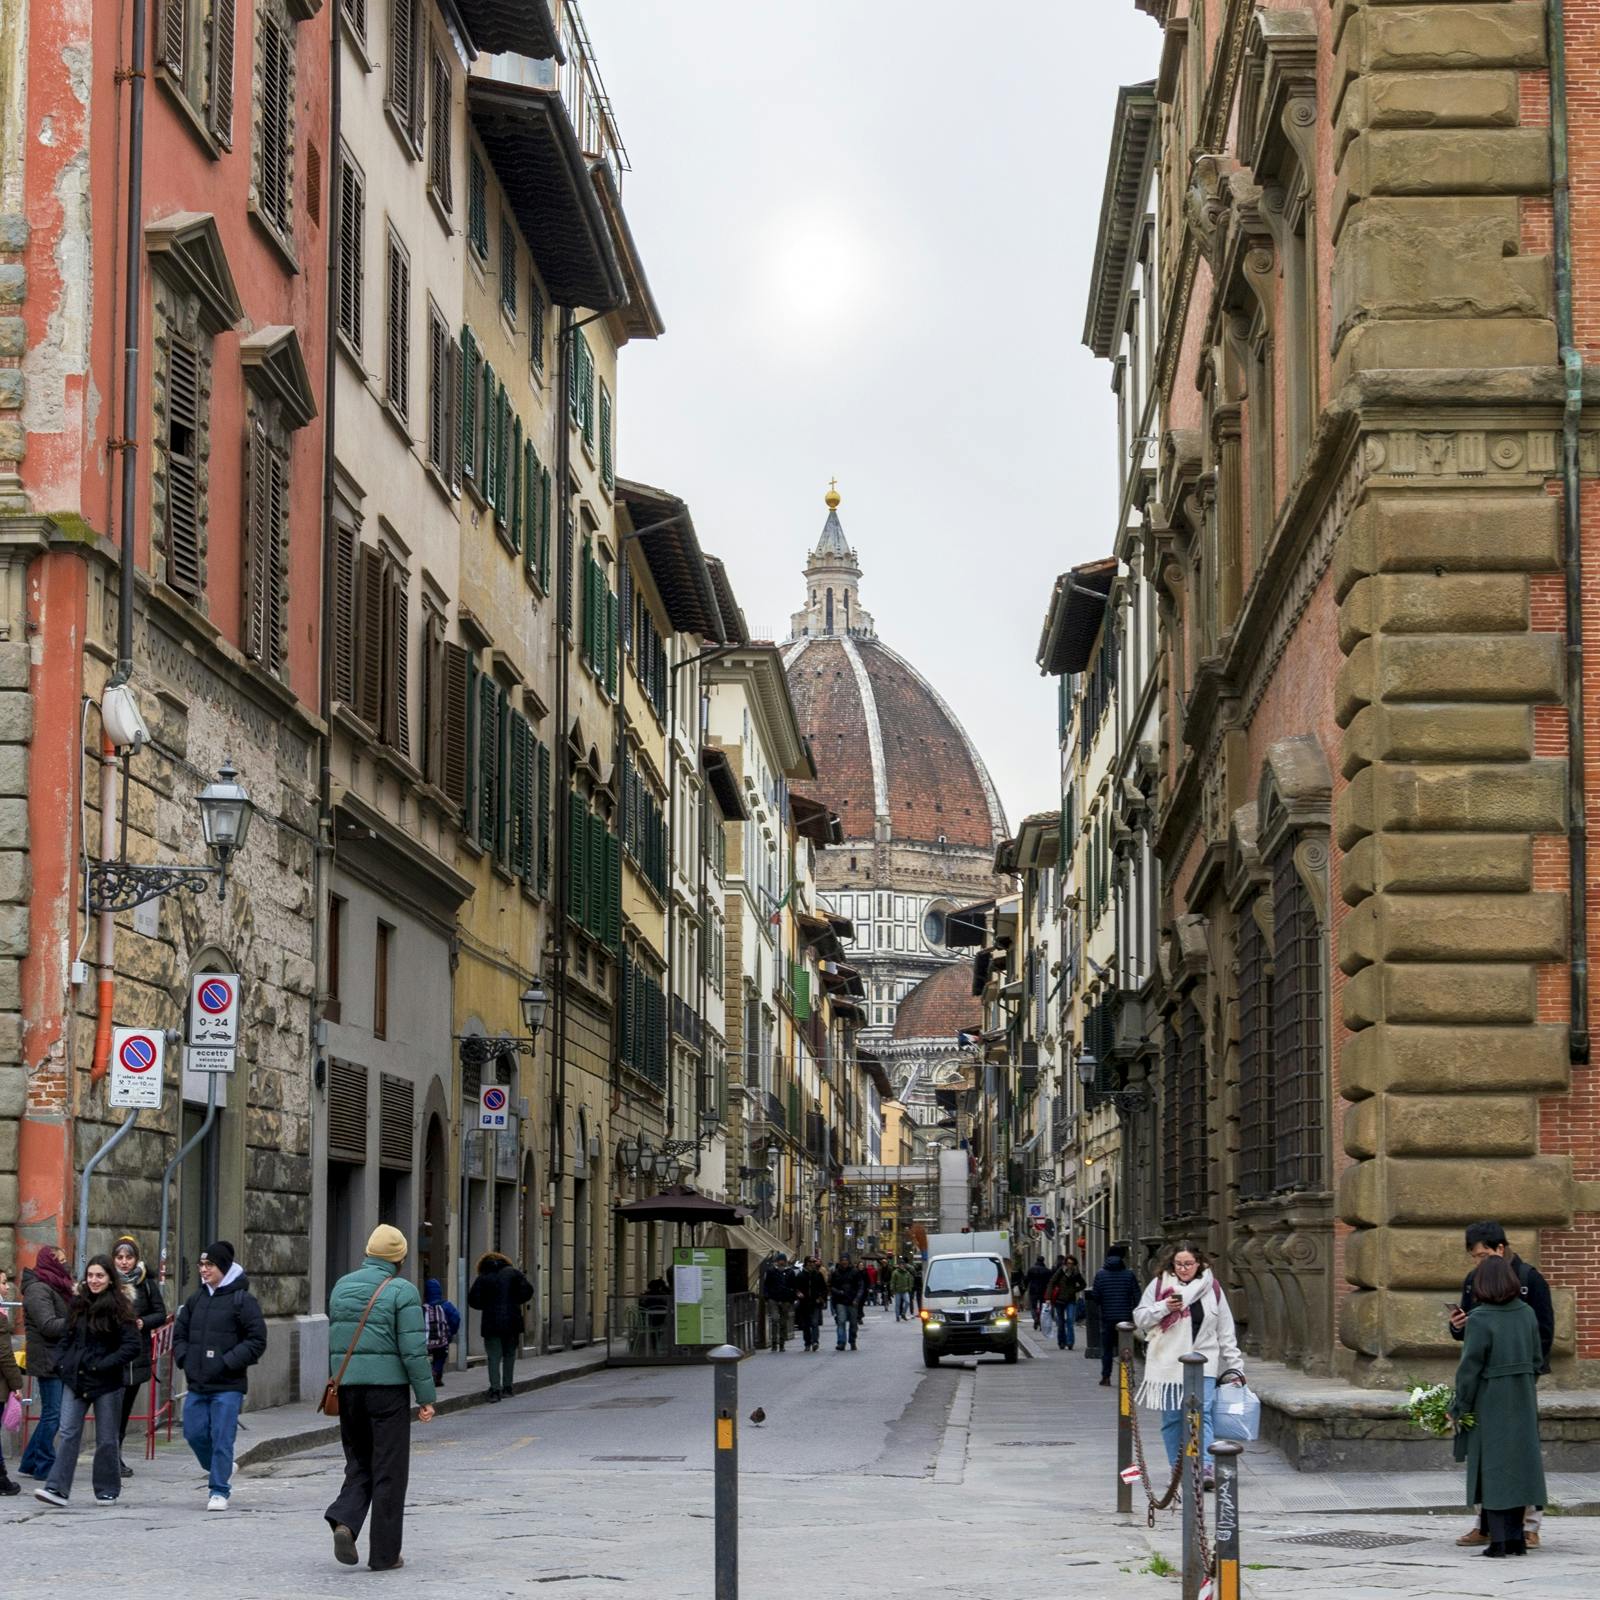 Hoogtepunten en verborgen juweeltjes van de interactieve ontdekkingswandeling in Florence